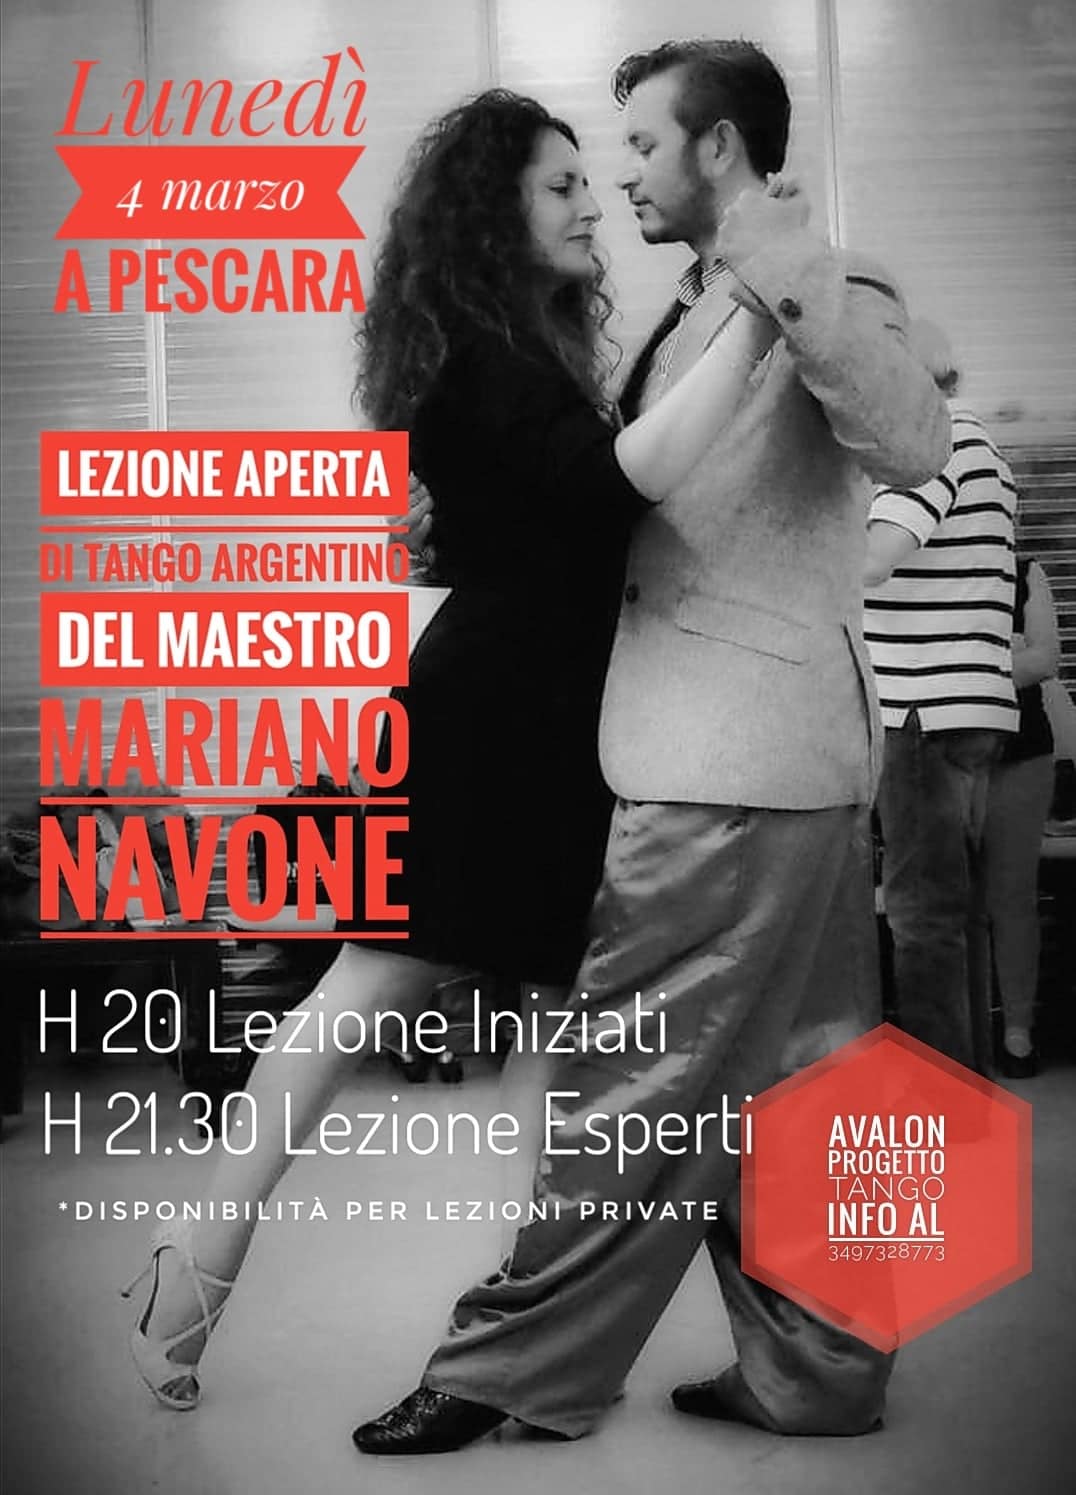 Avalon Progetto Tango - lezione aperta con Mariano Navano